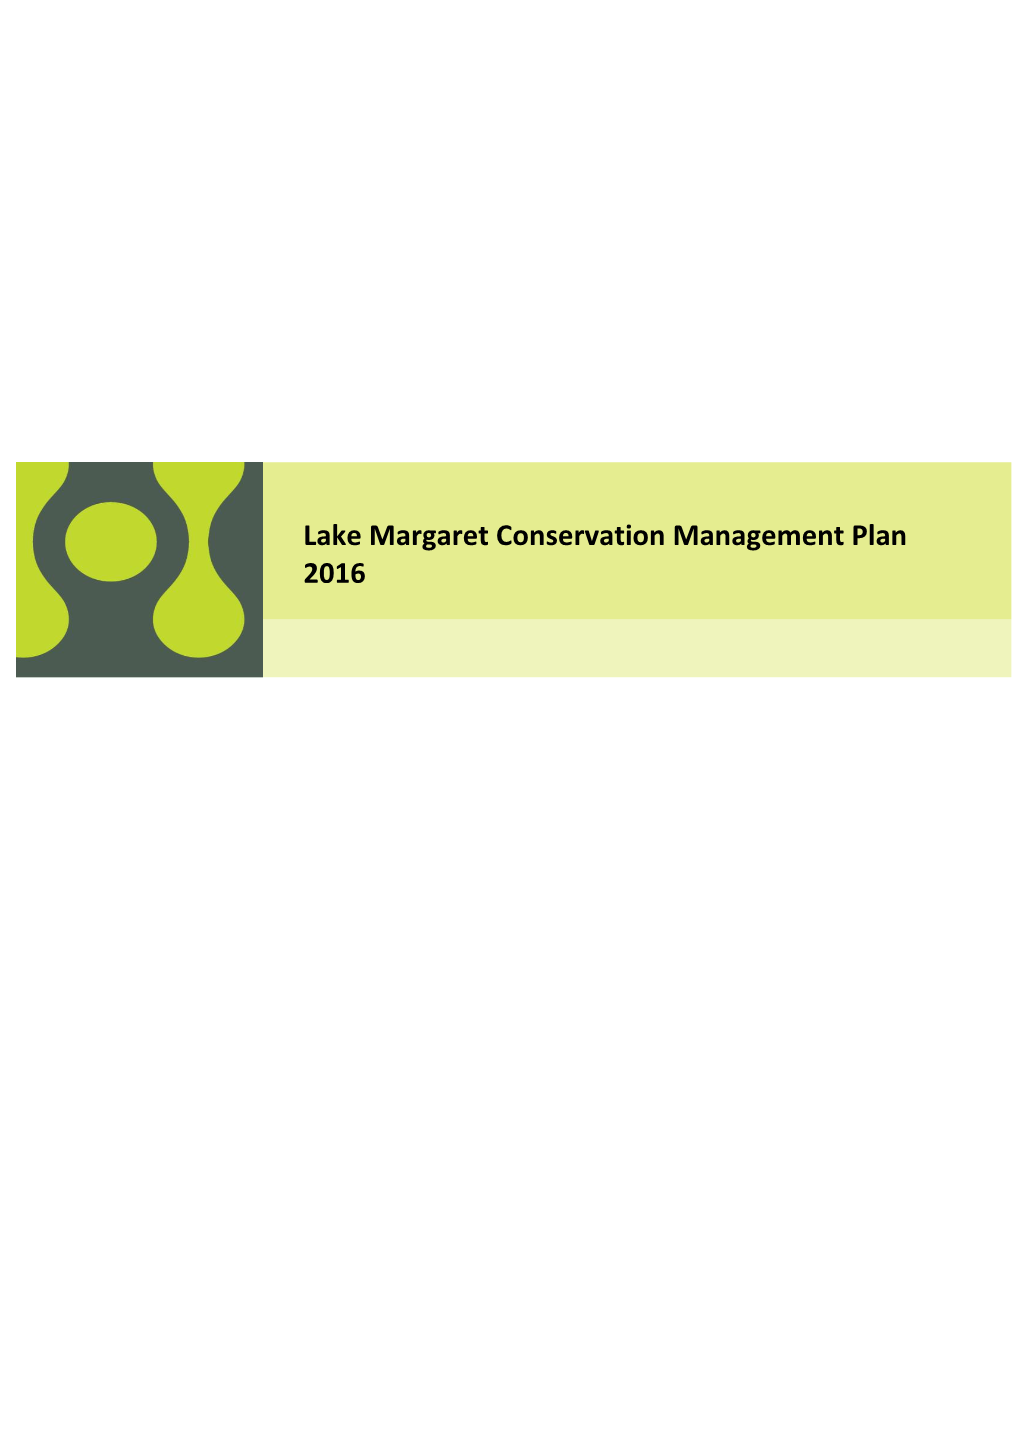 Lake Margaret Conservation Management Plan 2016